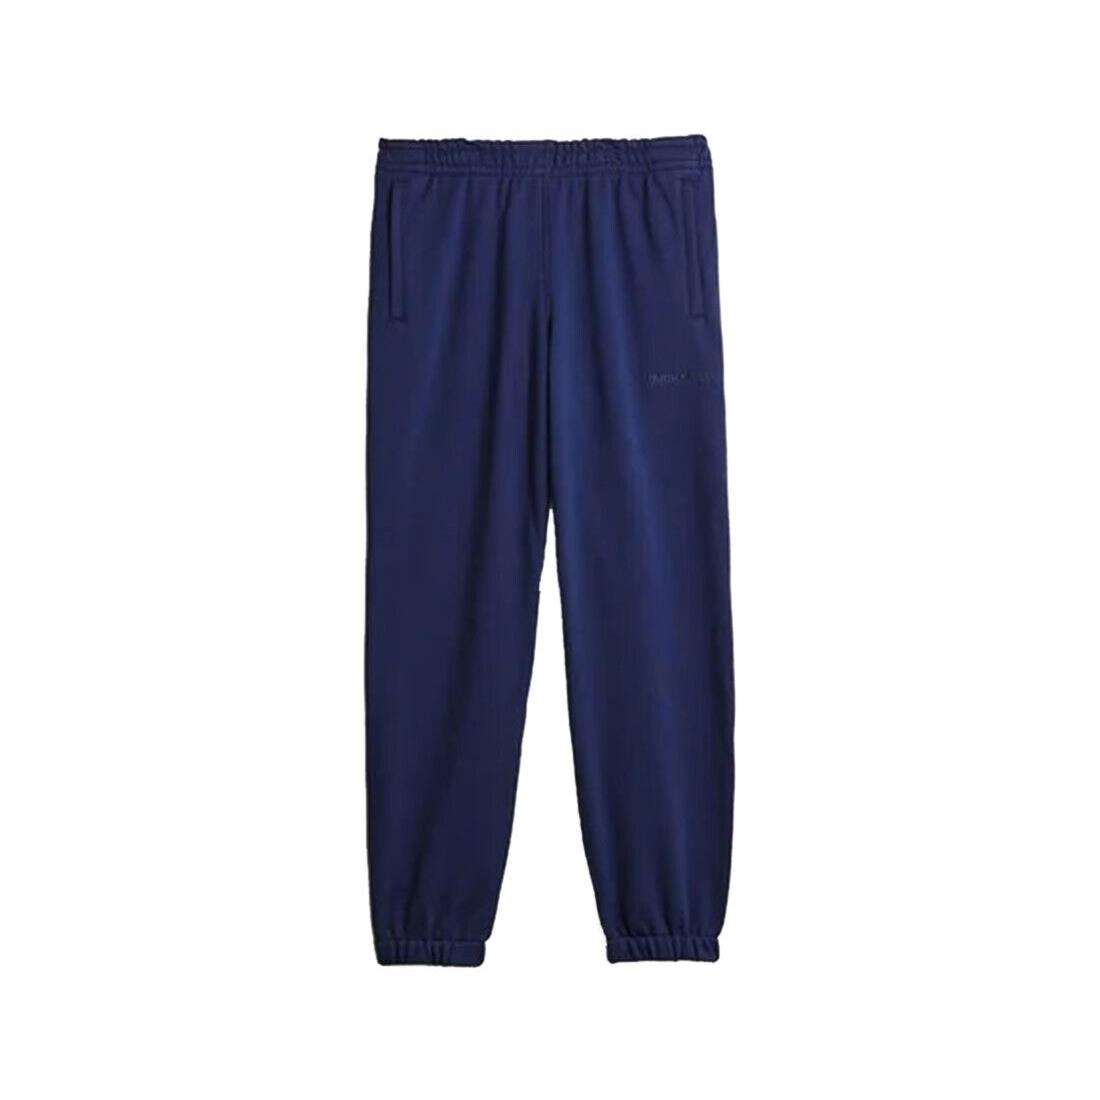 Adidas Pw Basics Sweatpant Mens Active Pants Size L Color: Navy